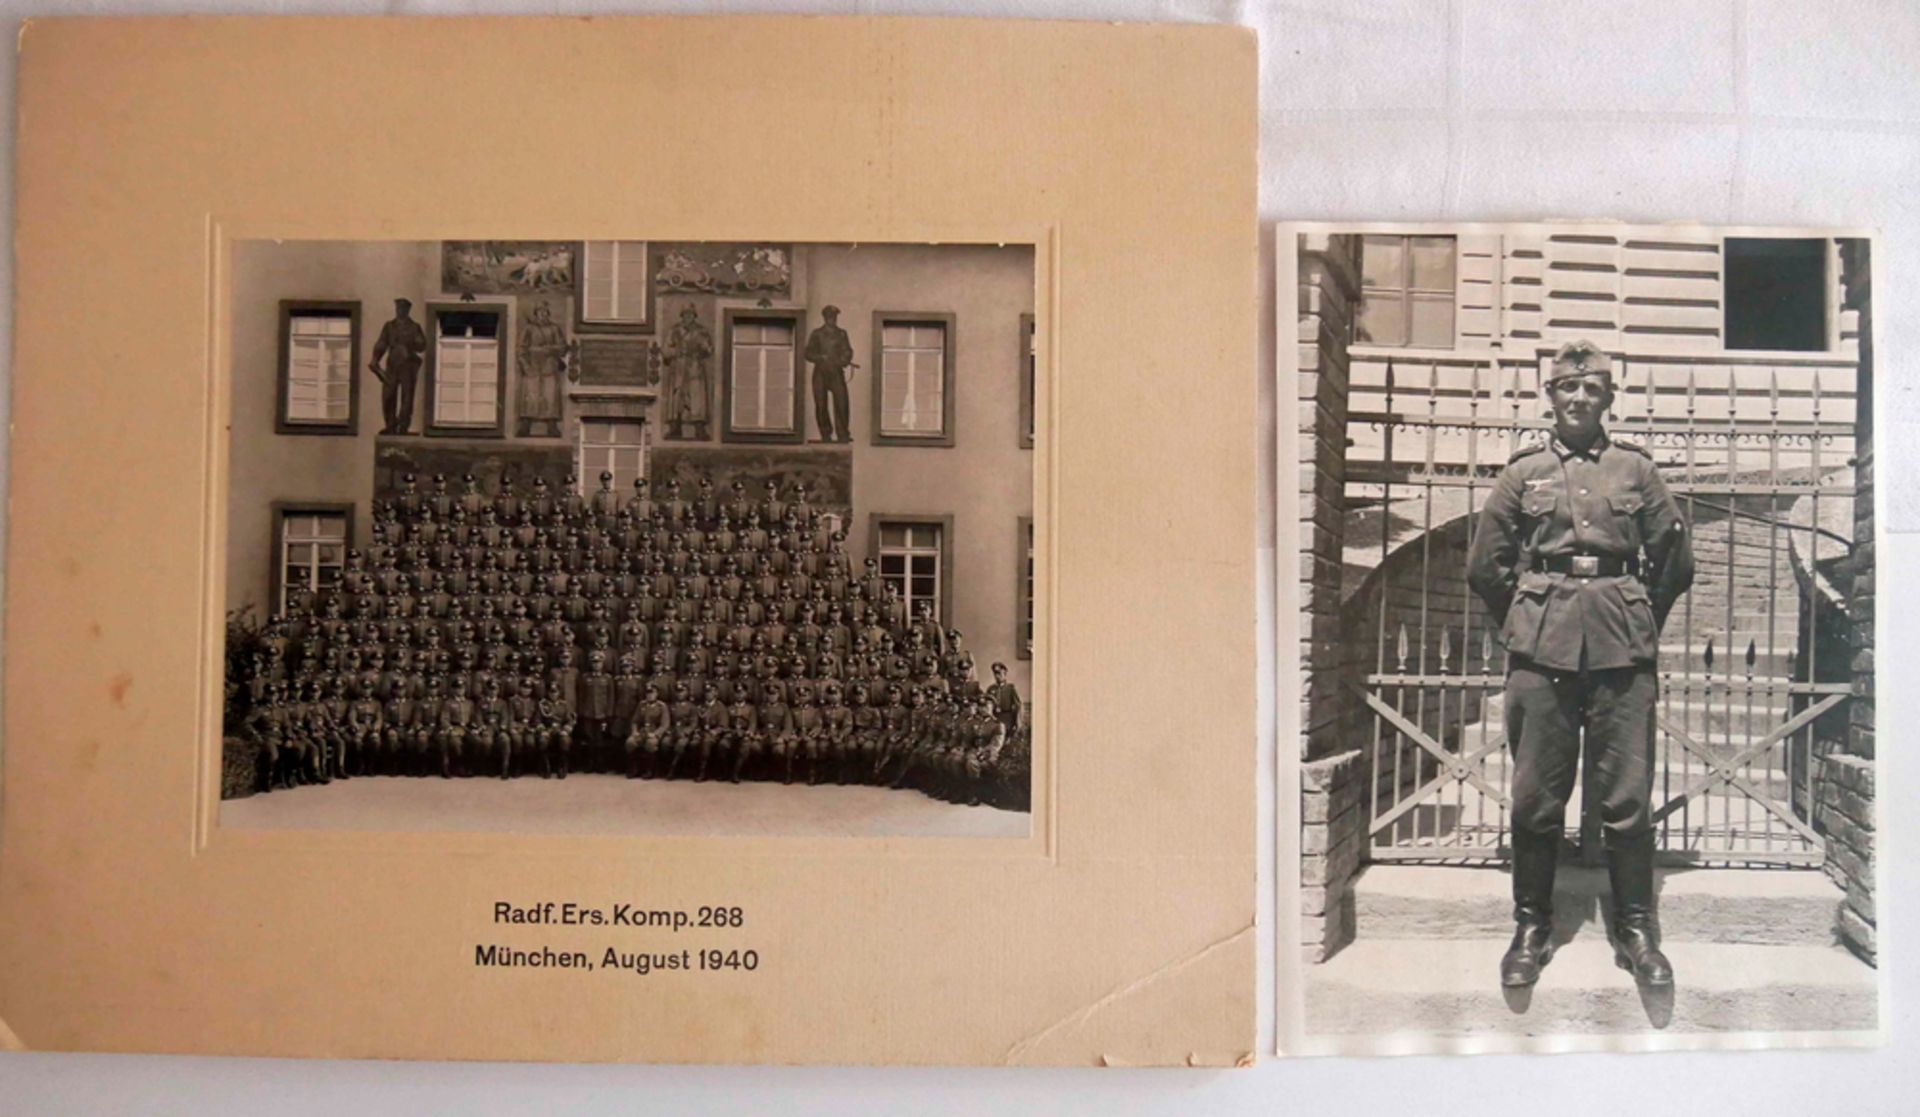 2 Fotografien 3. Reich, 1x Soldat und 1x Radf. Ers. Komp. 268, München, August 1940